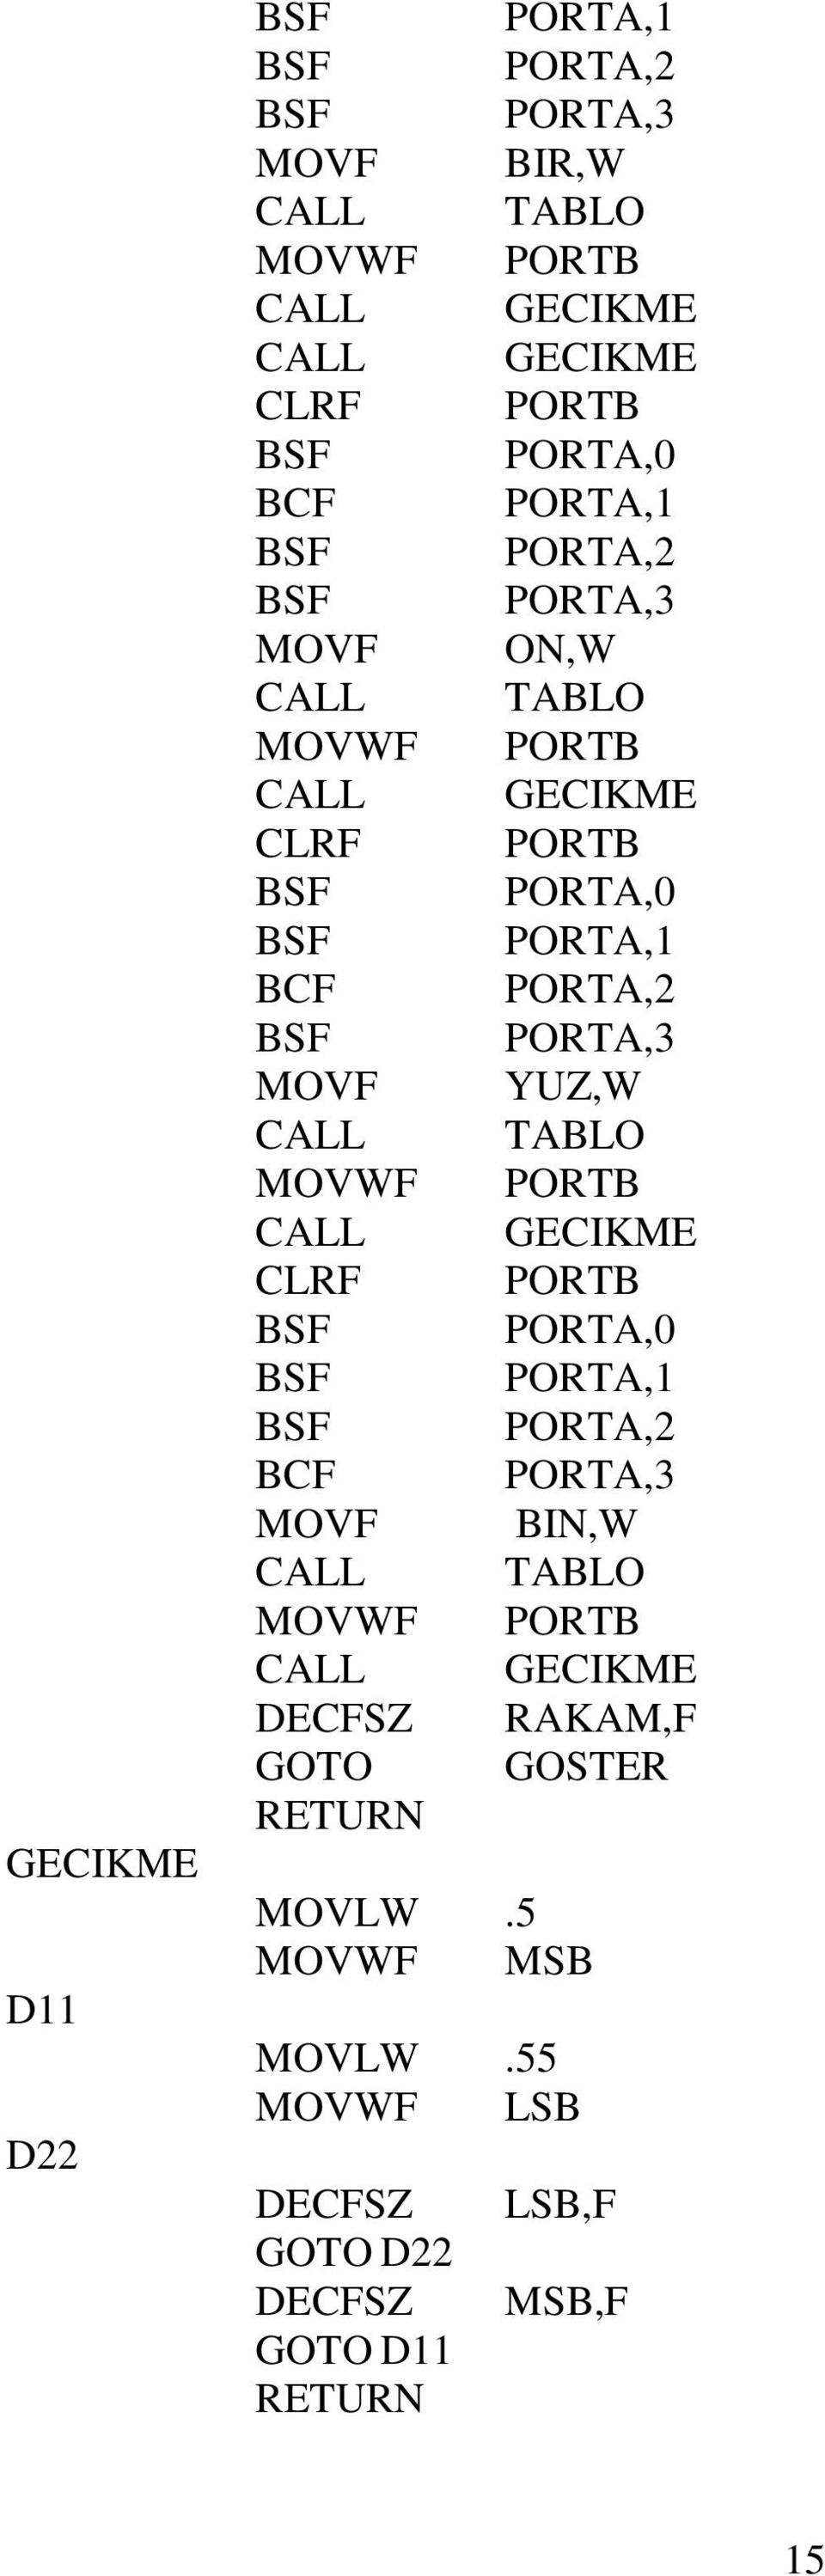 CALL TABLO MOVWF PORTB CALL GECIKME CLRF PORTB BSF PORTA,0 BSF PORTA,1 BSF PORTA,2 BCF PORTA,3 MOVF BIN,W CALL TABLO MOVWF PORTB CALL